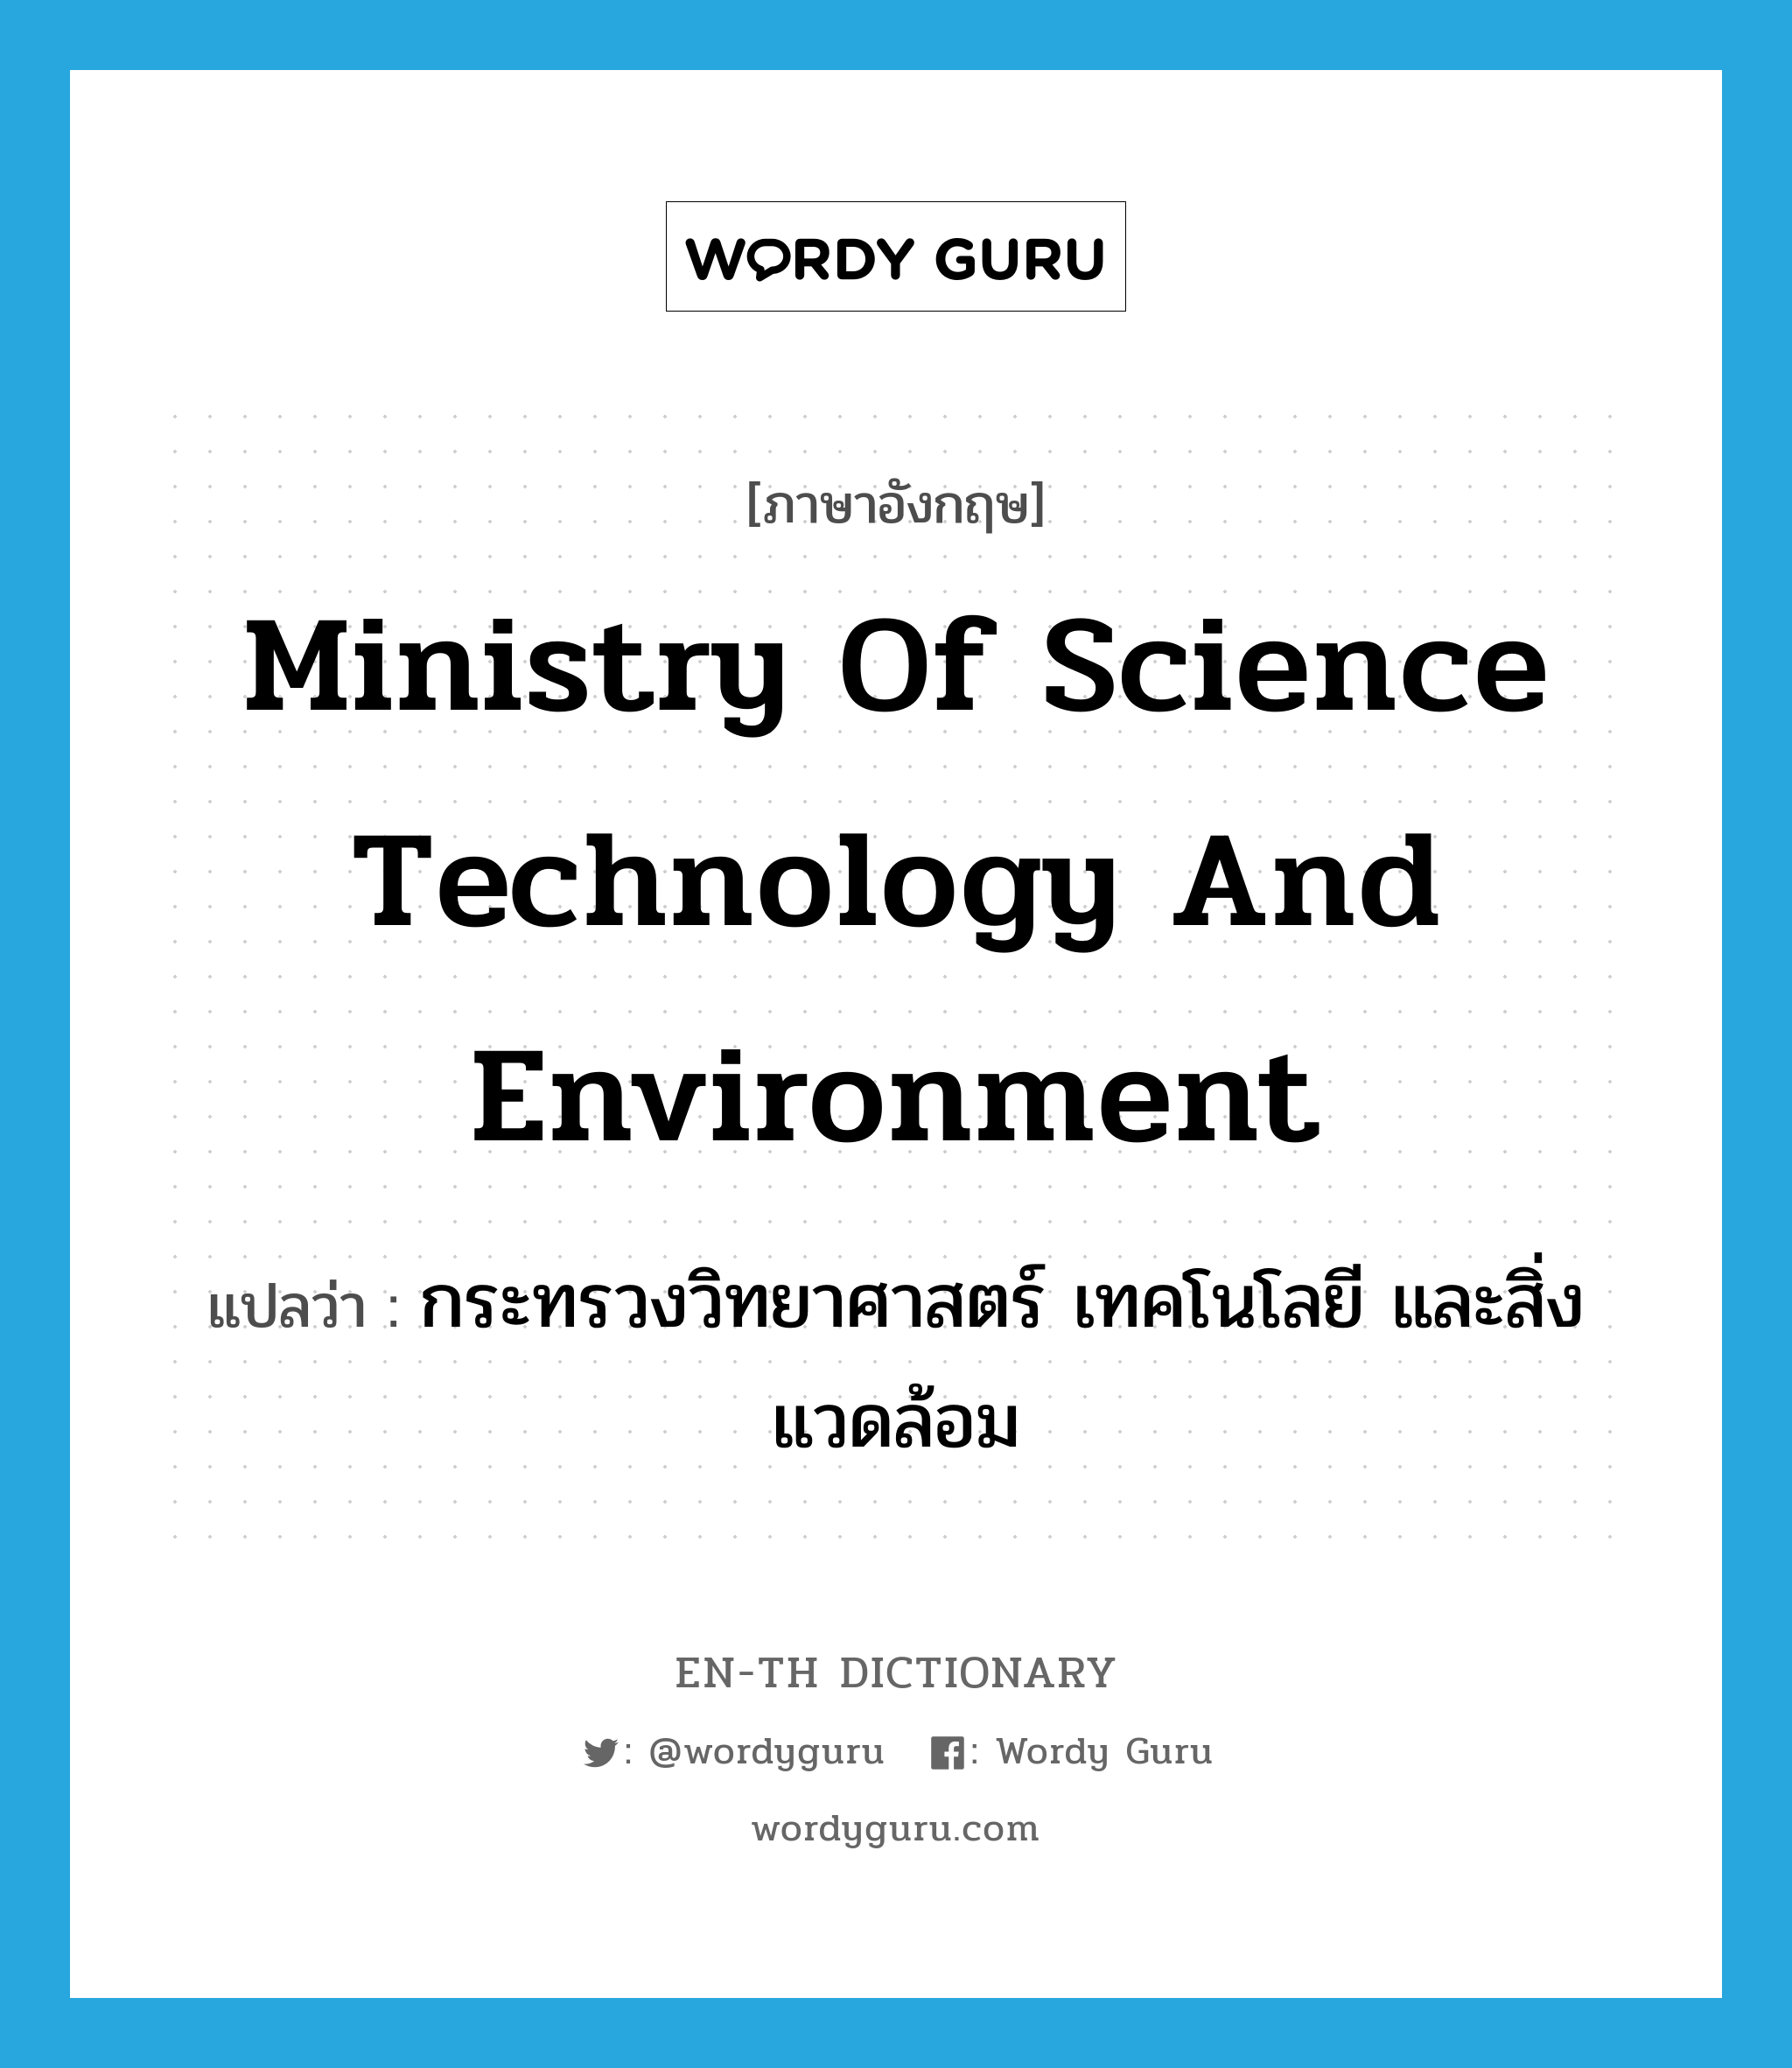 กระทรวงวิทยาศาสตร์ เทคโนโลยี และสิ่งแวดล้อม ภาษาอังกฤษ?, คำศัพท์ภาษาอังกฤษ กระทรวงวิทยาศาสตร์ เทคโนโลยี และสิ่งแวดล้อม แปลว่า Ministry of Science Technology and Environment ประเภท N หมวด N